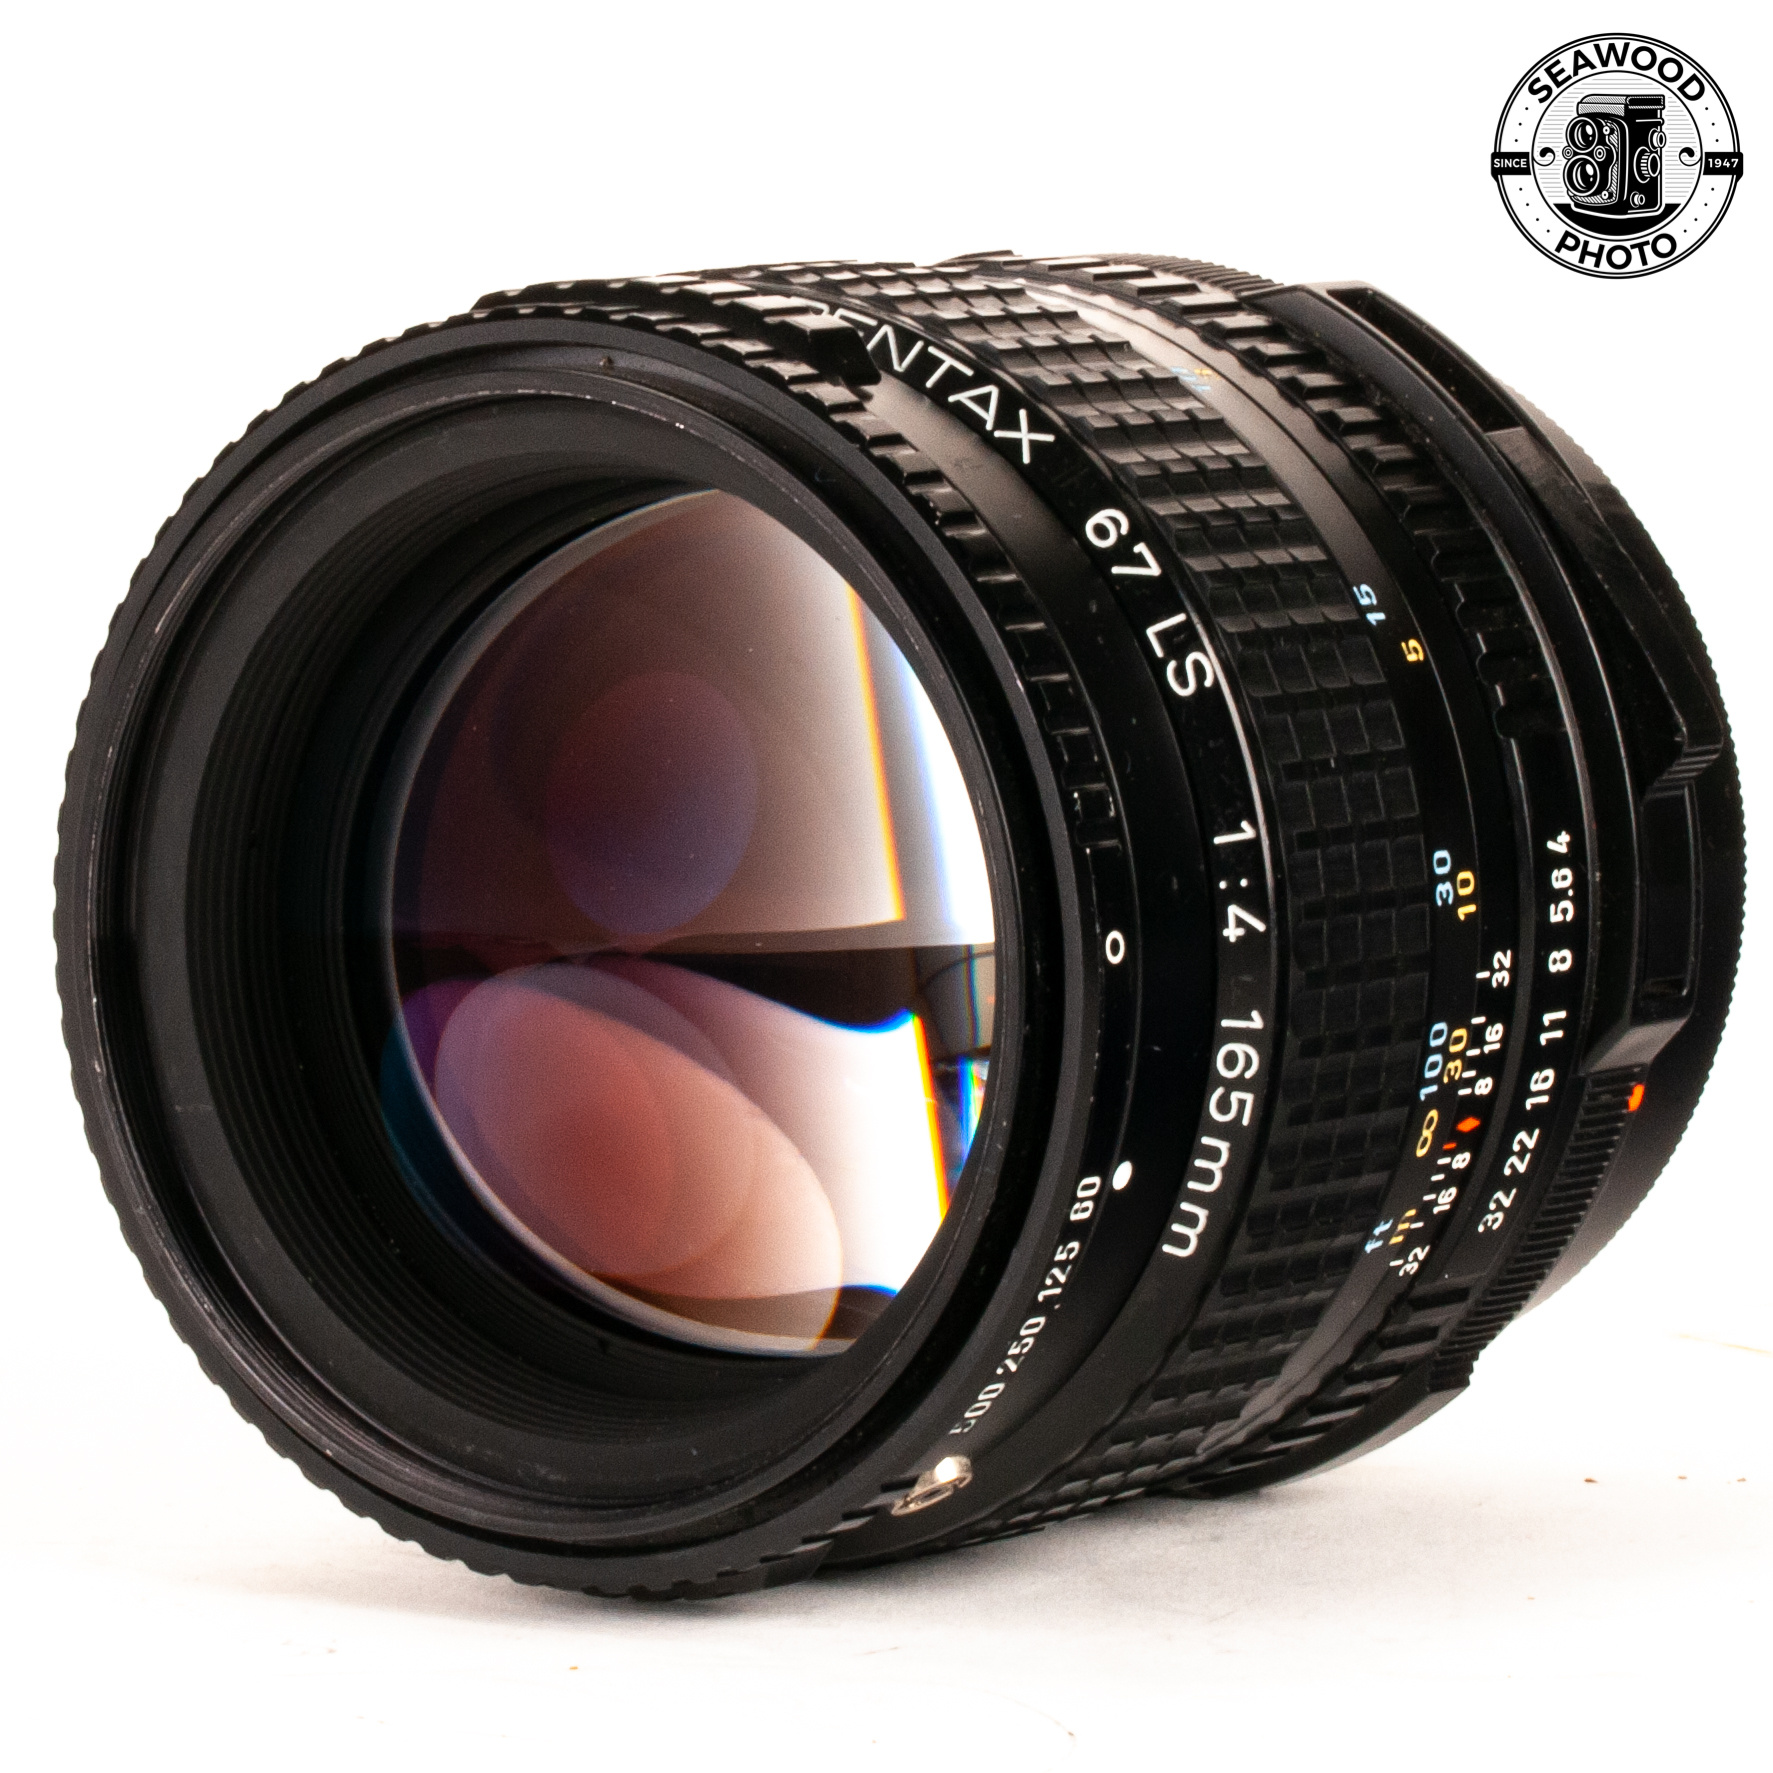 Pentax 67 SMC 165mm f/4 LS Leaf Shutter Lens GOOD+ - Seawood Photo